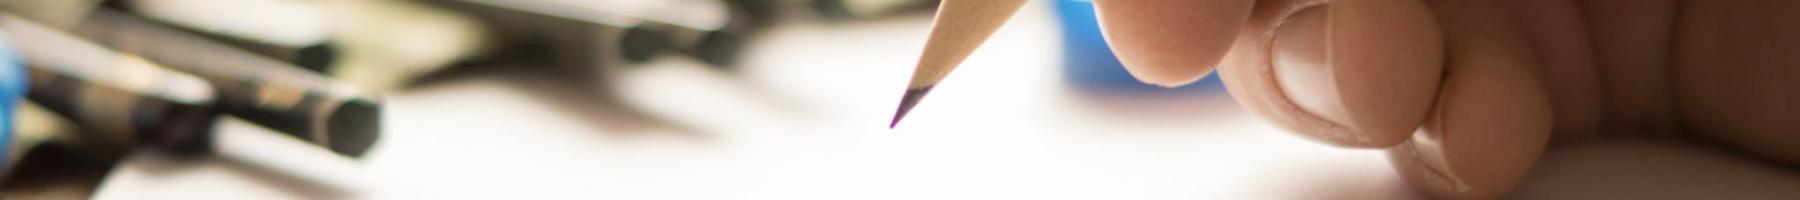 Une main tenant un crayon pendant un croquis